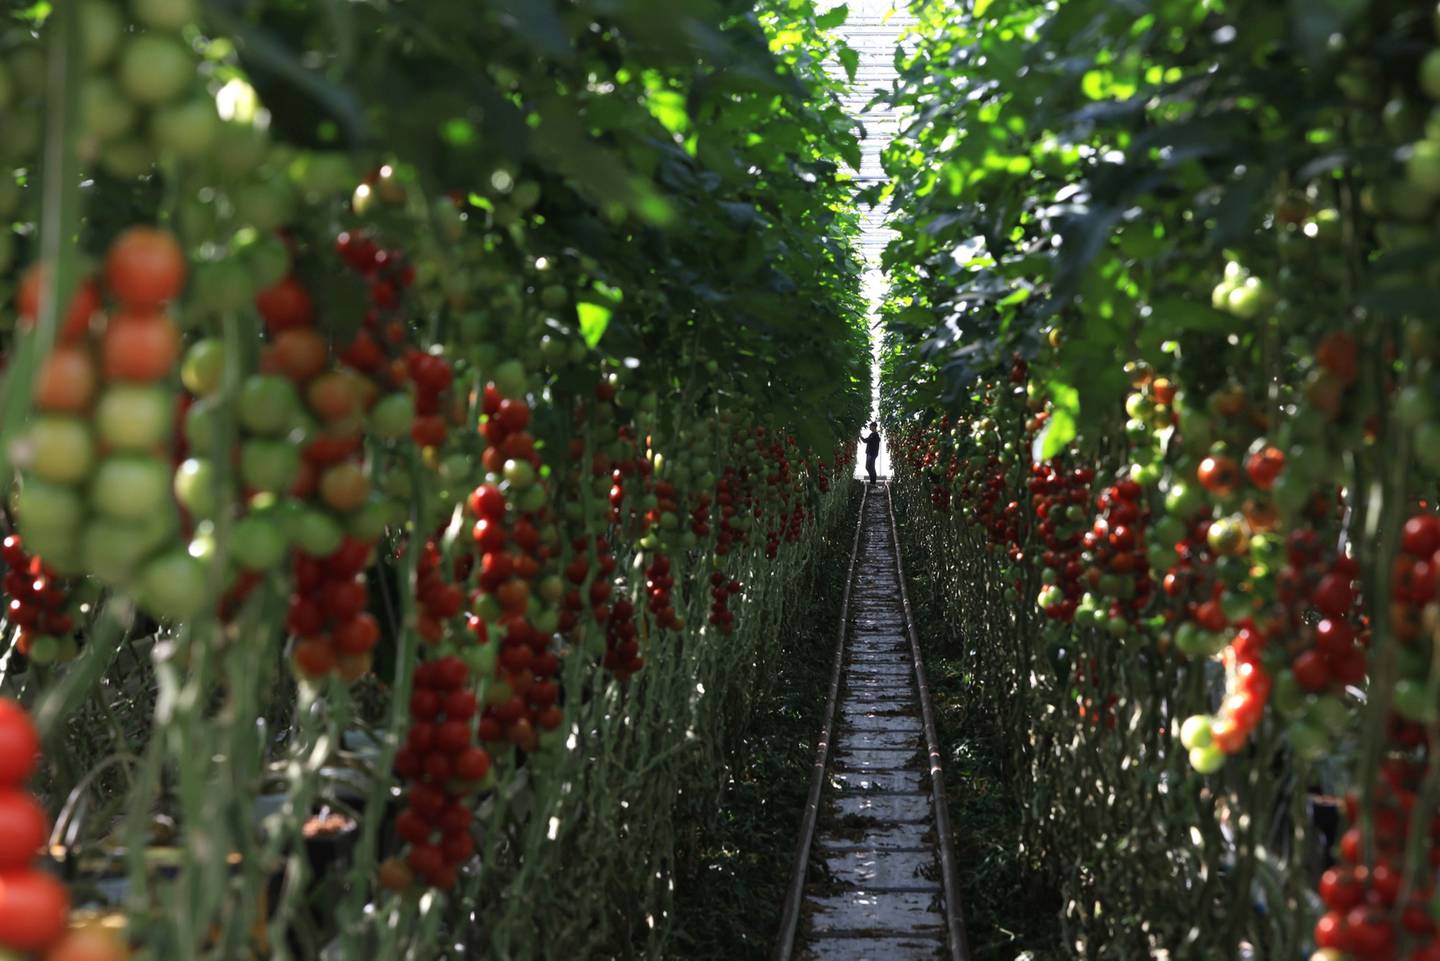 Un travailleur récolte des tomates dans une usine de production sous serre à Wittenberg, en Allemagne.  La hausse des prix de l'électricité et du gaz affectera les cultures cultivées dans des serres chauffées pendant l'hiver.  Bloomberg